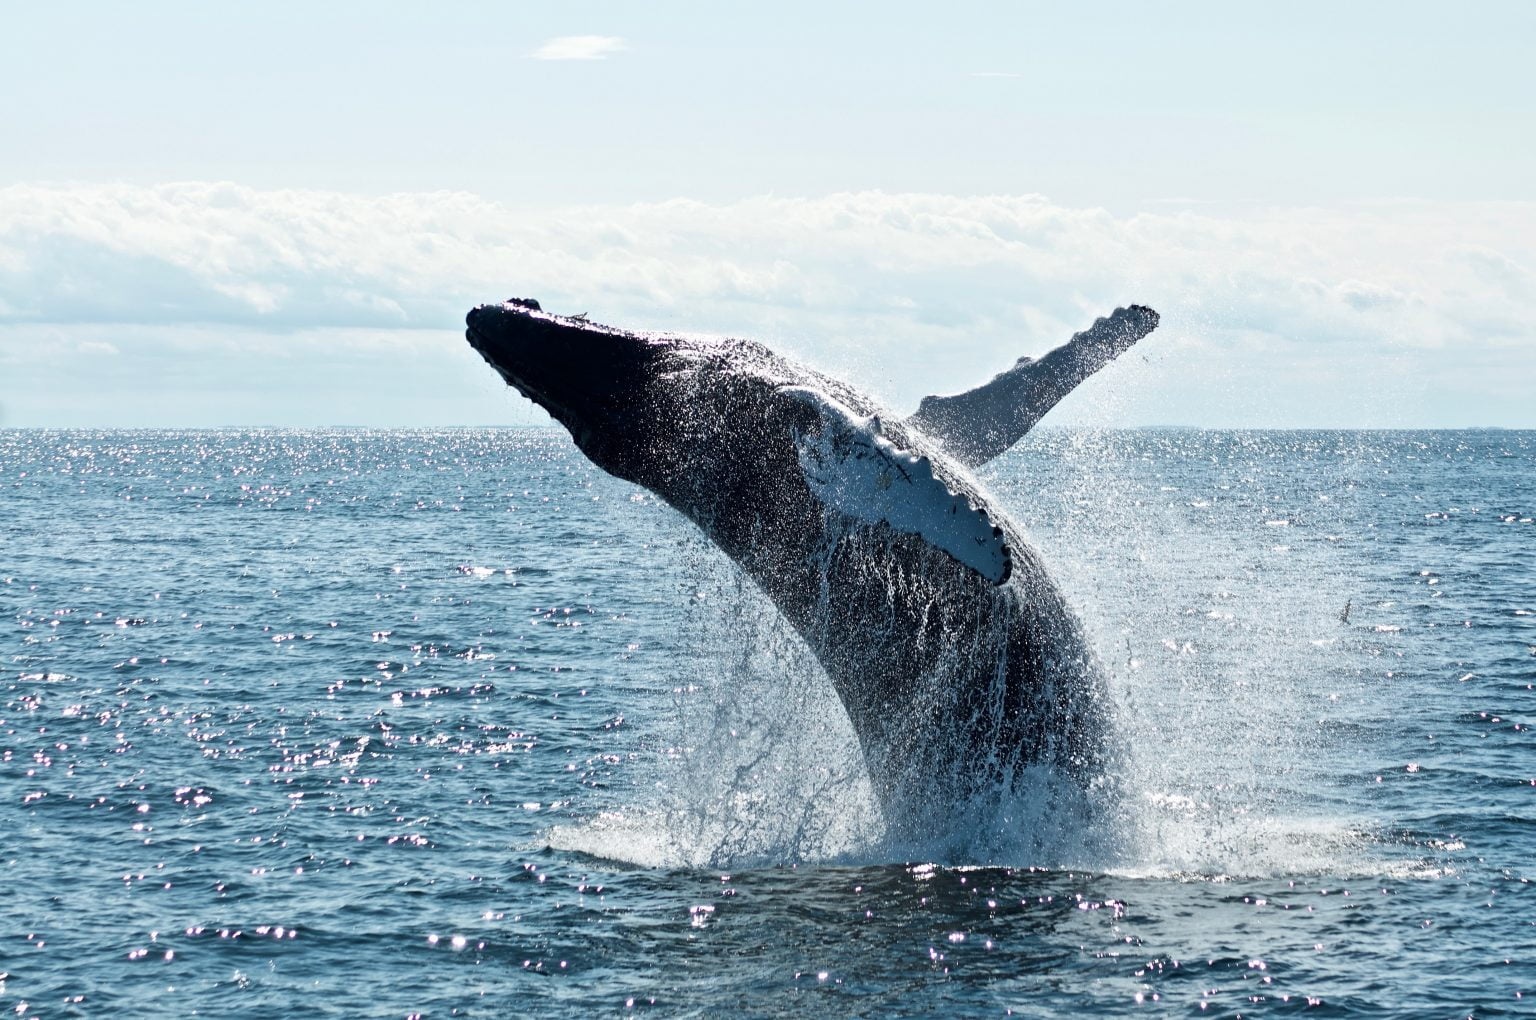 نهنگ بیتکوین 3 - روند فعلی نهنگ های بیت کوین از یک فشار فروش قریب الوقوع خبر میدهد